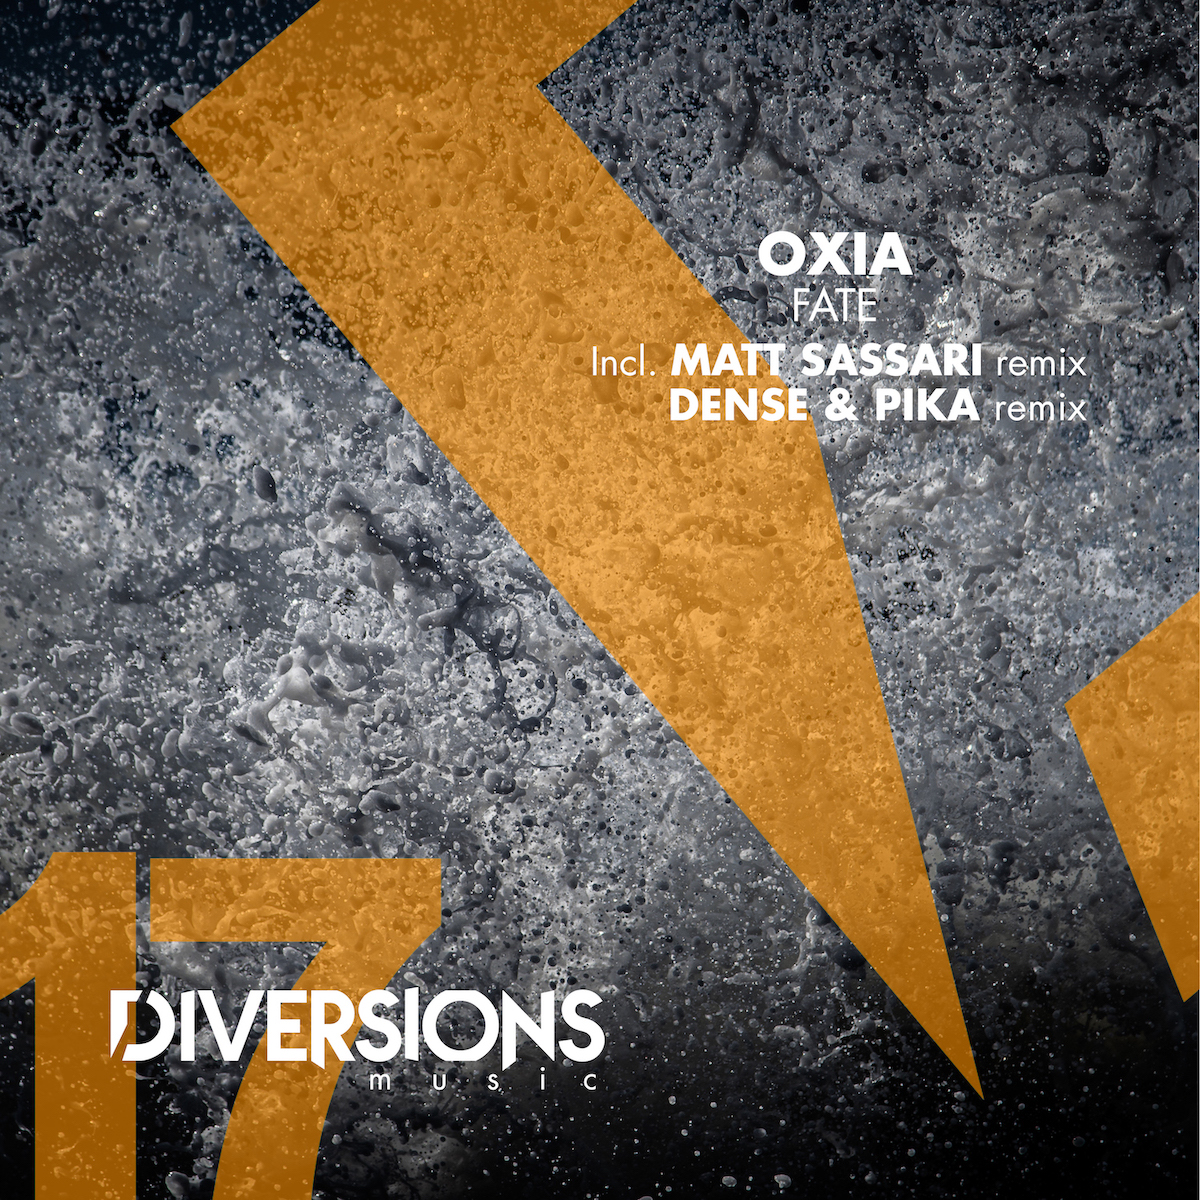 Lire la suite à propos de l’article OXIA revient sur son label Diversions Music avec un EP en trois parties, « Fate », incluant des remixes de Dense & Pika et Matt Sassari